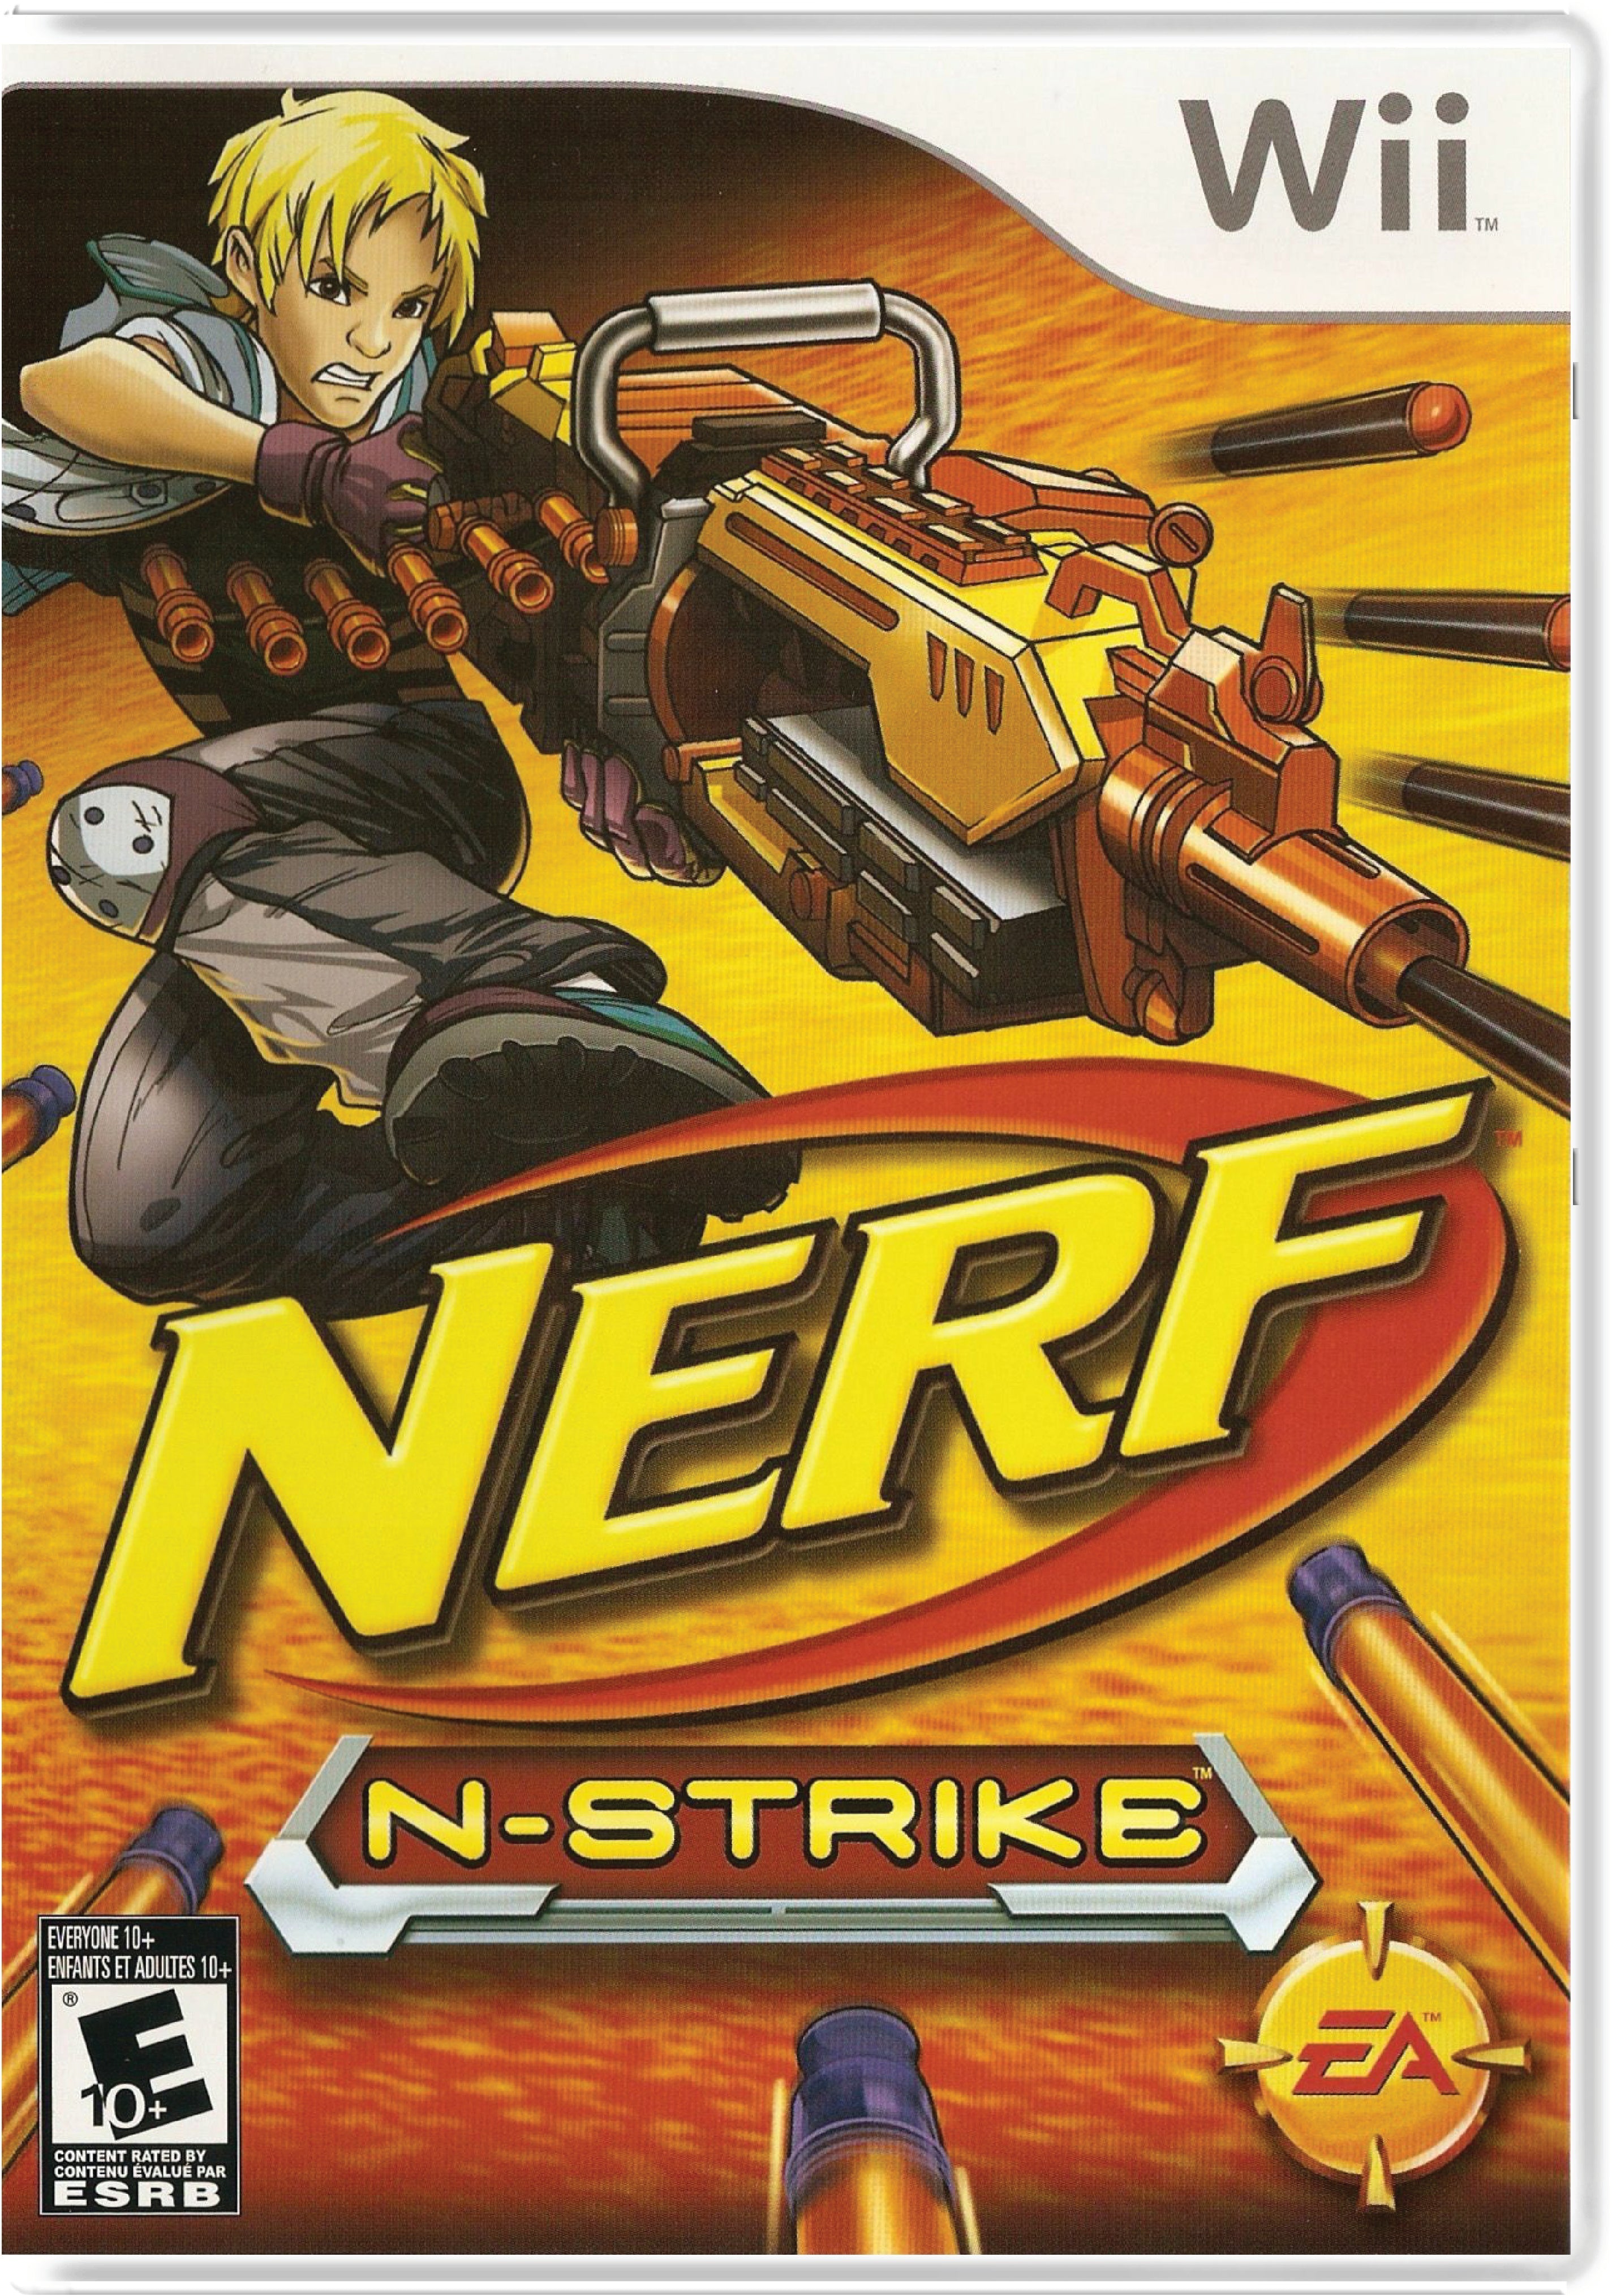 NERF N-Strike Cover Art